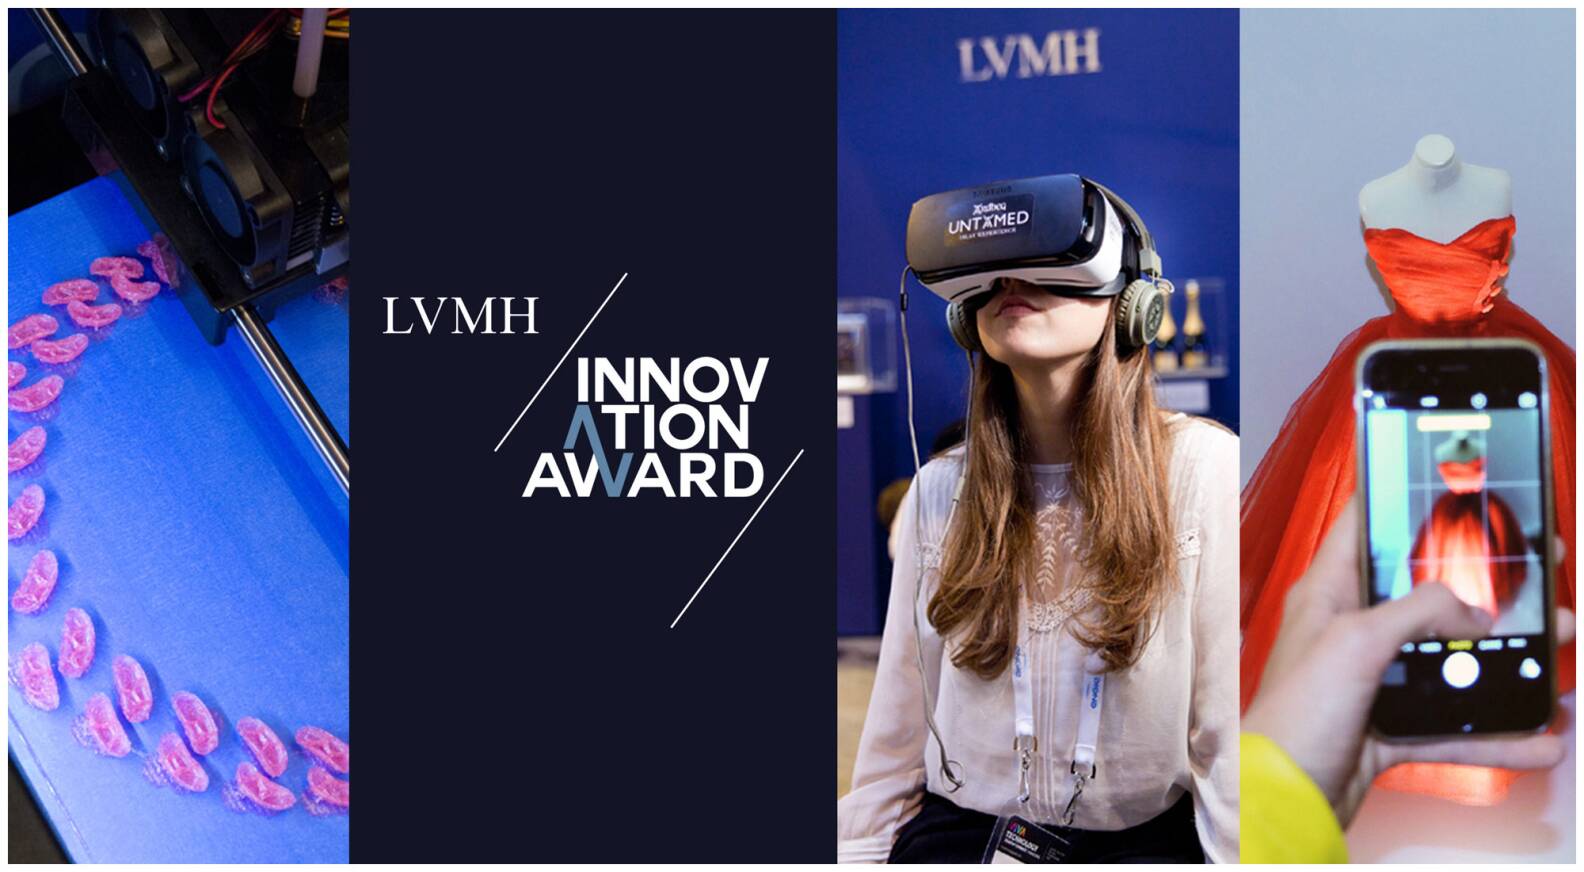 LVMH launches the LVMH Innovation Award at Viva Technology 2017 - LVMH